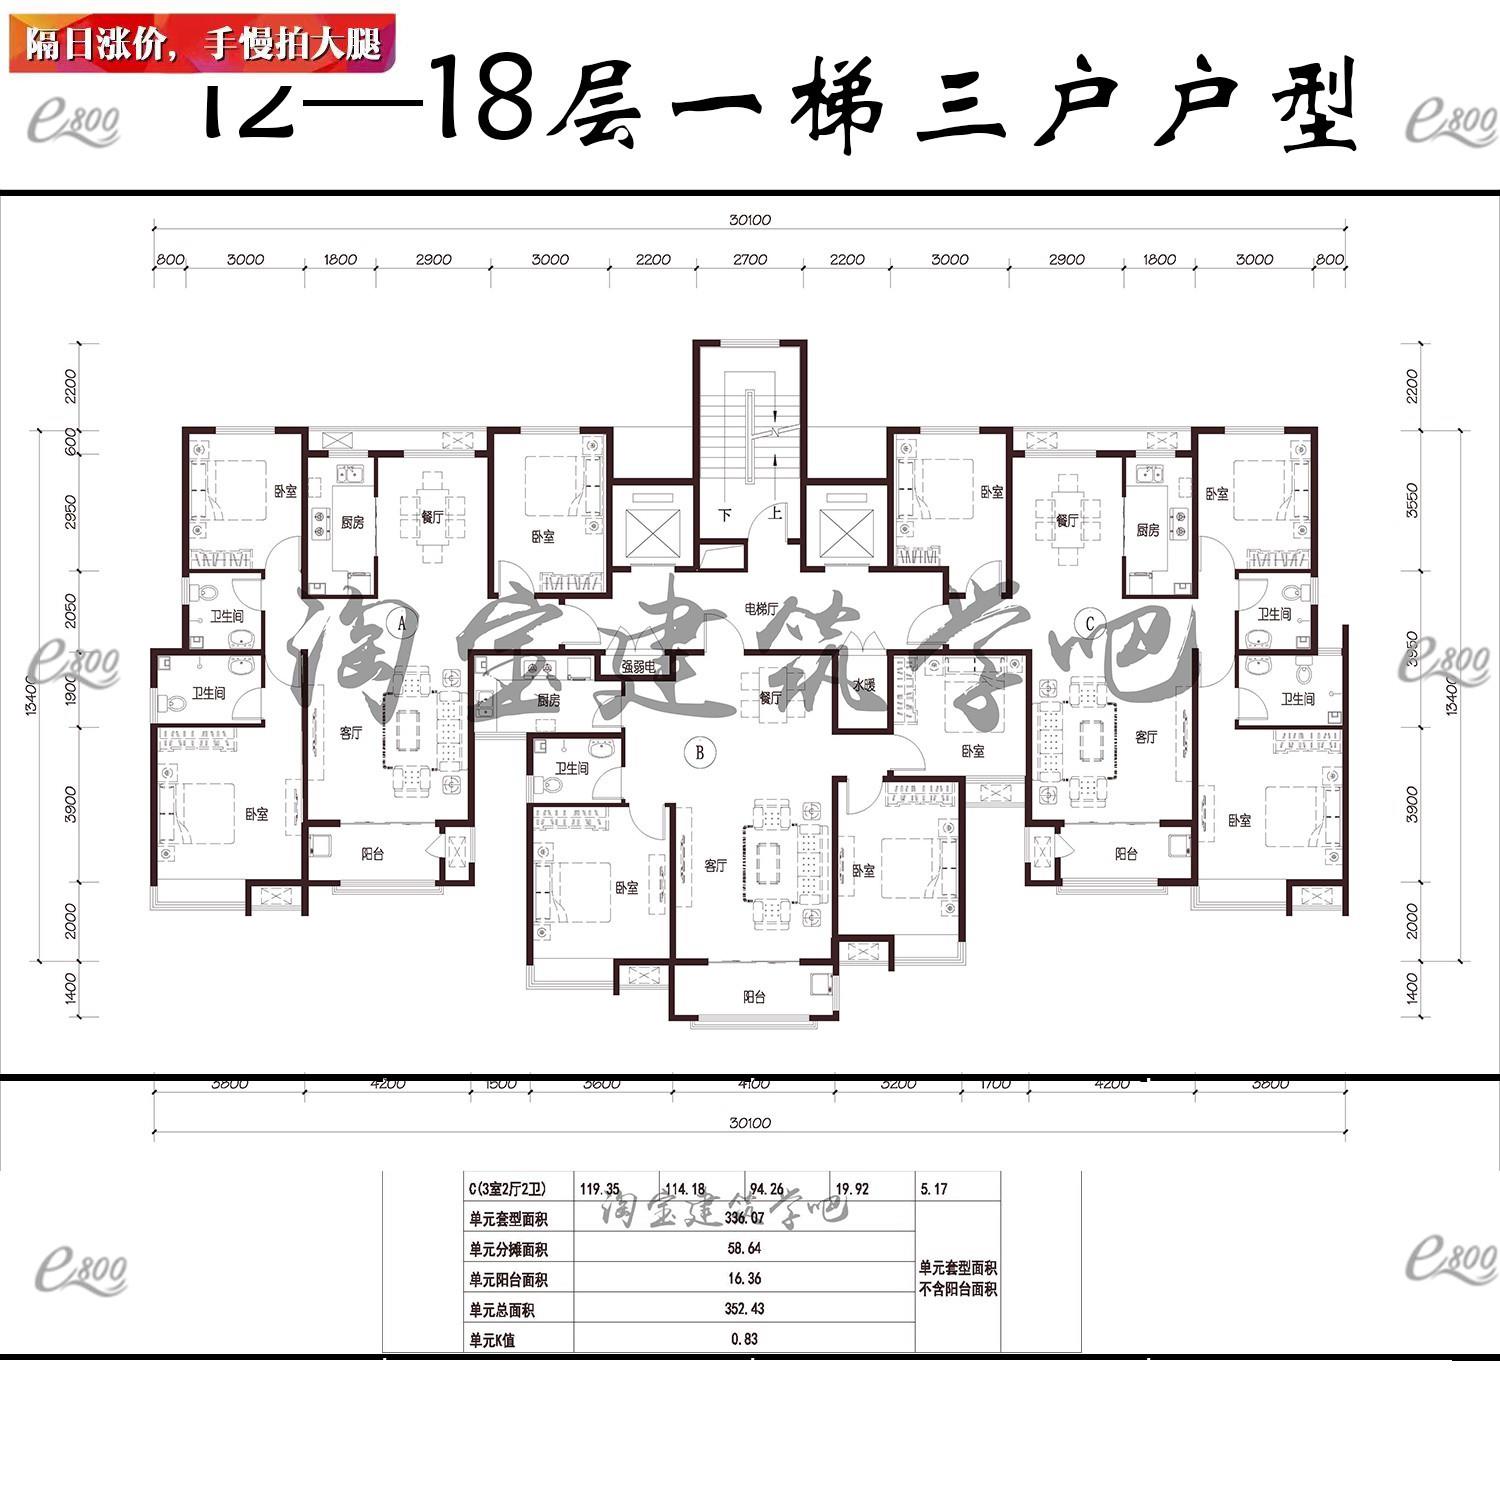 12—18层住宅一梯三户 二三四房两三室一两厅一两卫CAD户型图